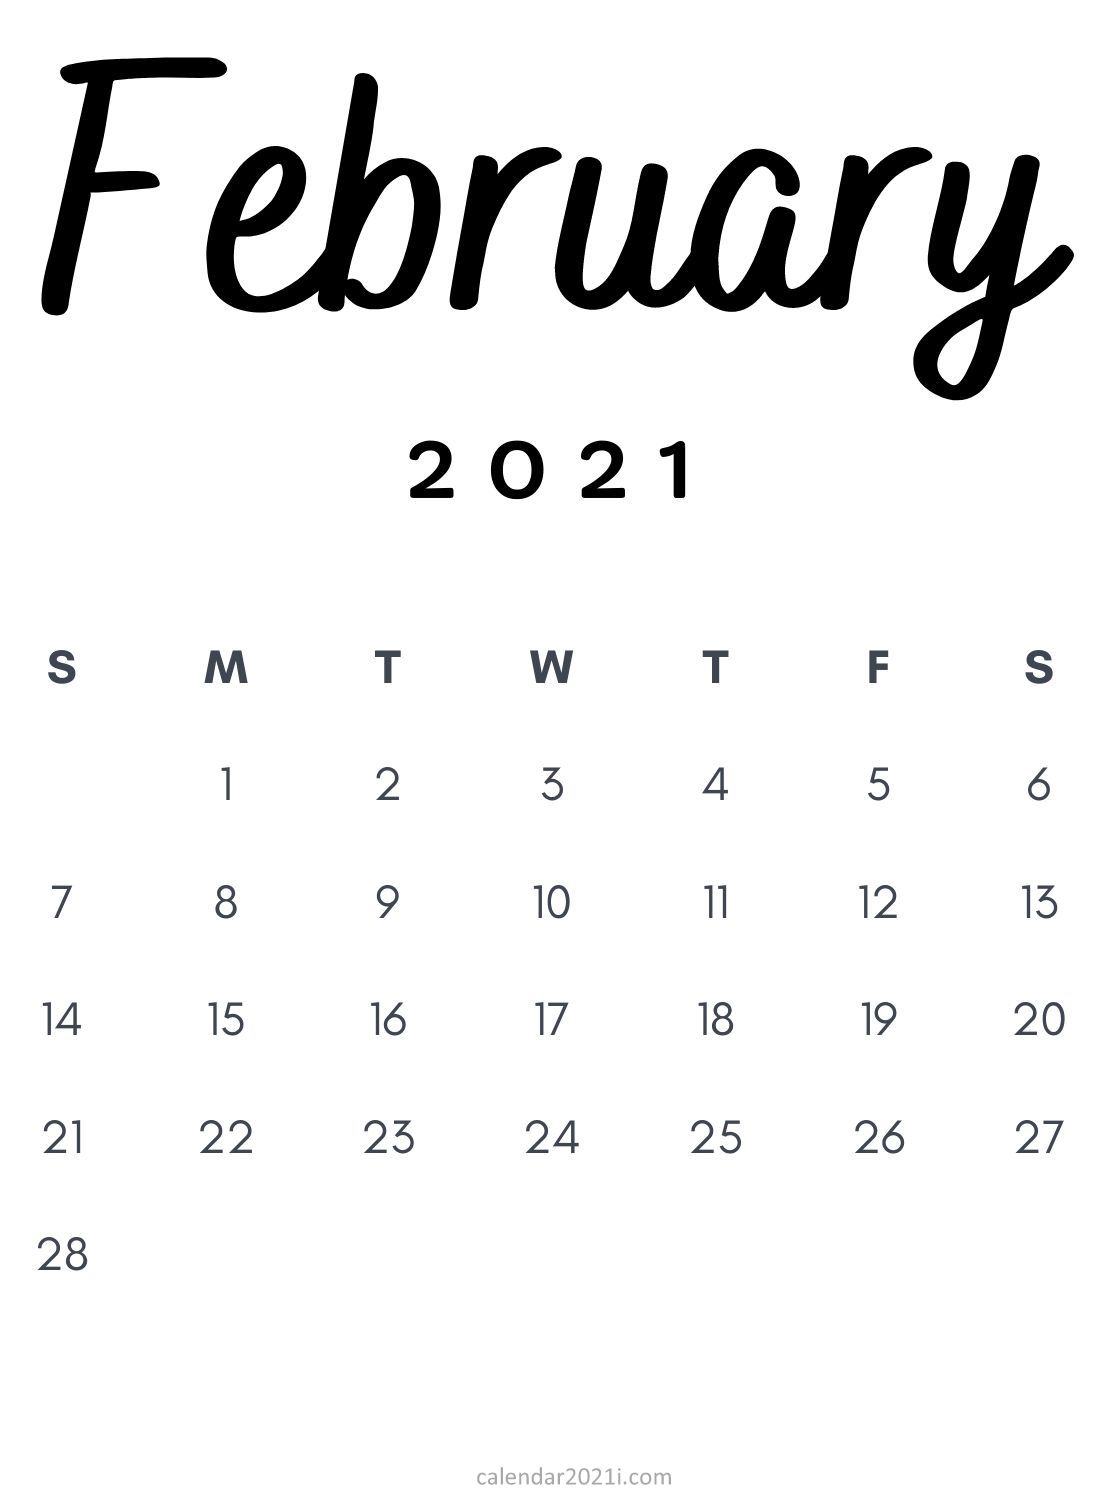 February 2021 Minimalist Calendar Printable